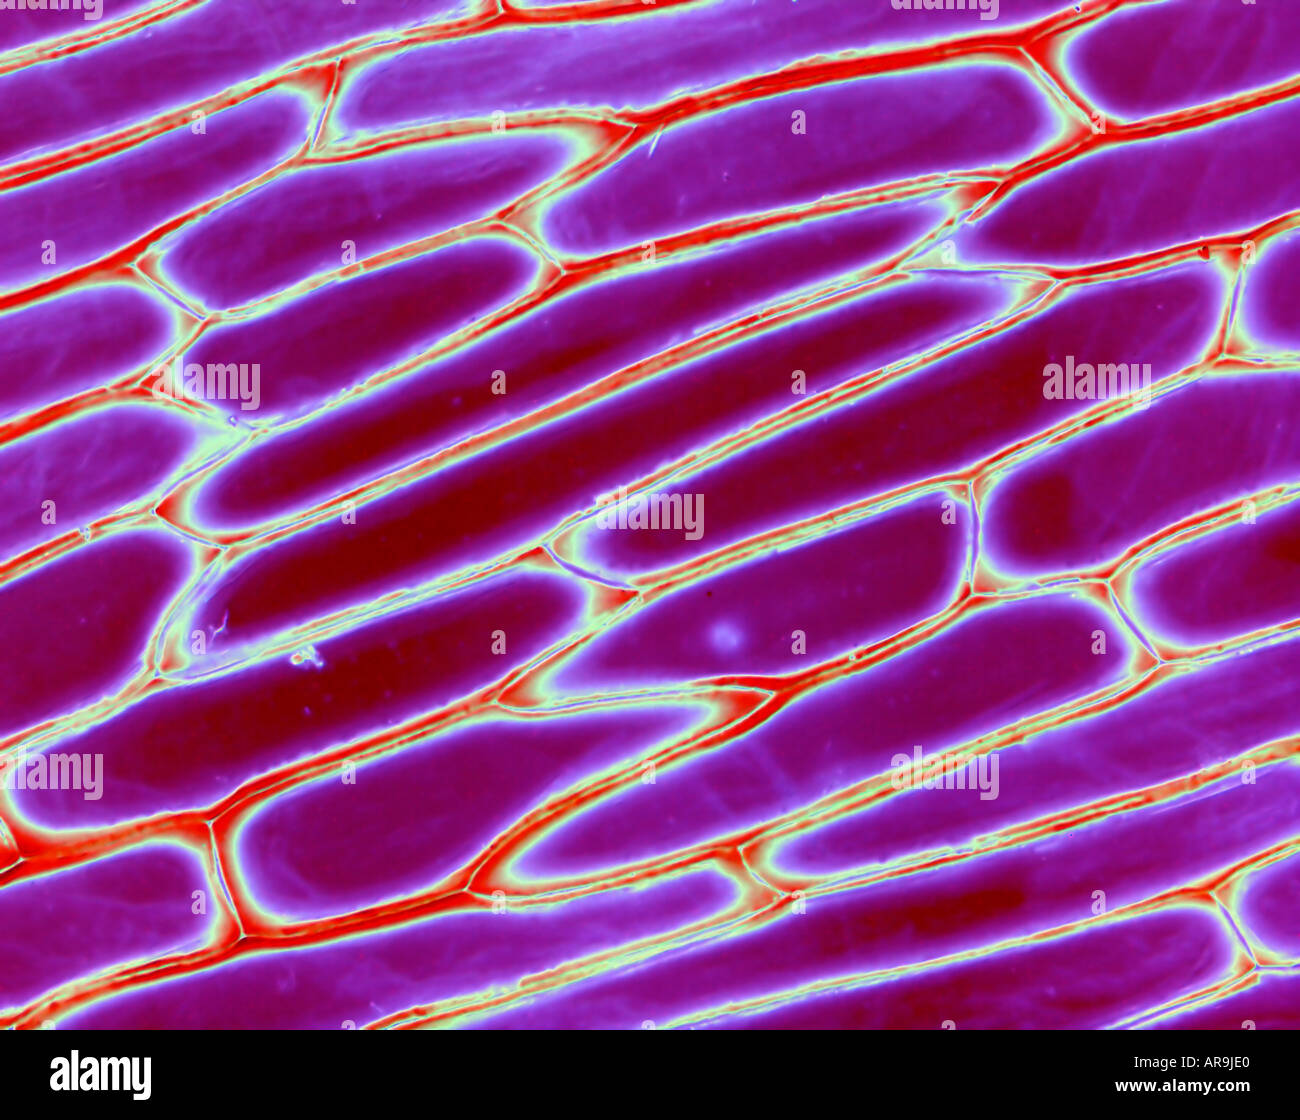 Onion skin cell -Fotos und -Bildmaterial in hoher Auflösung – Alamy